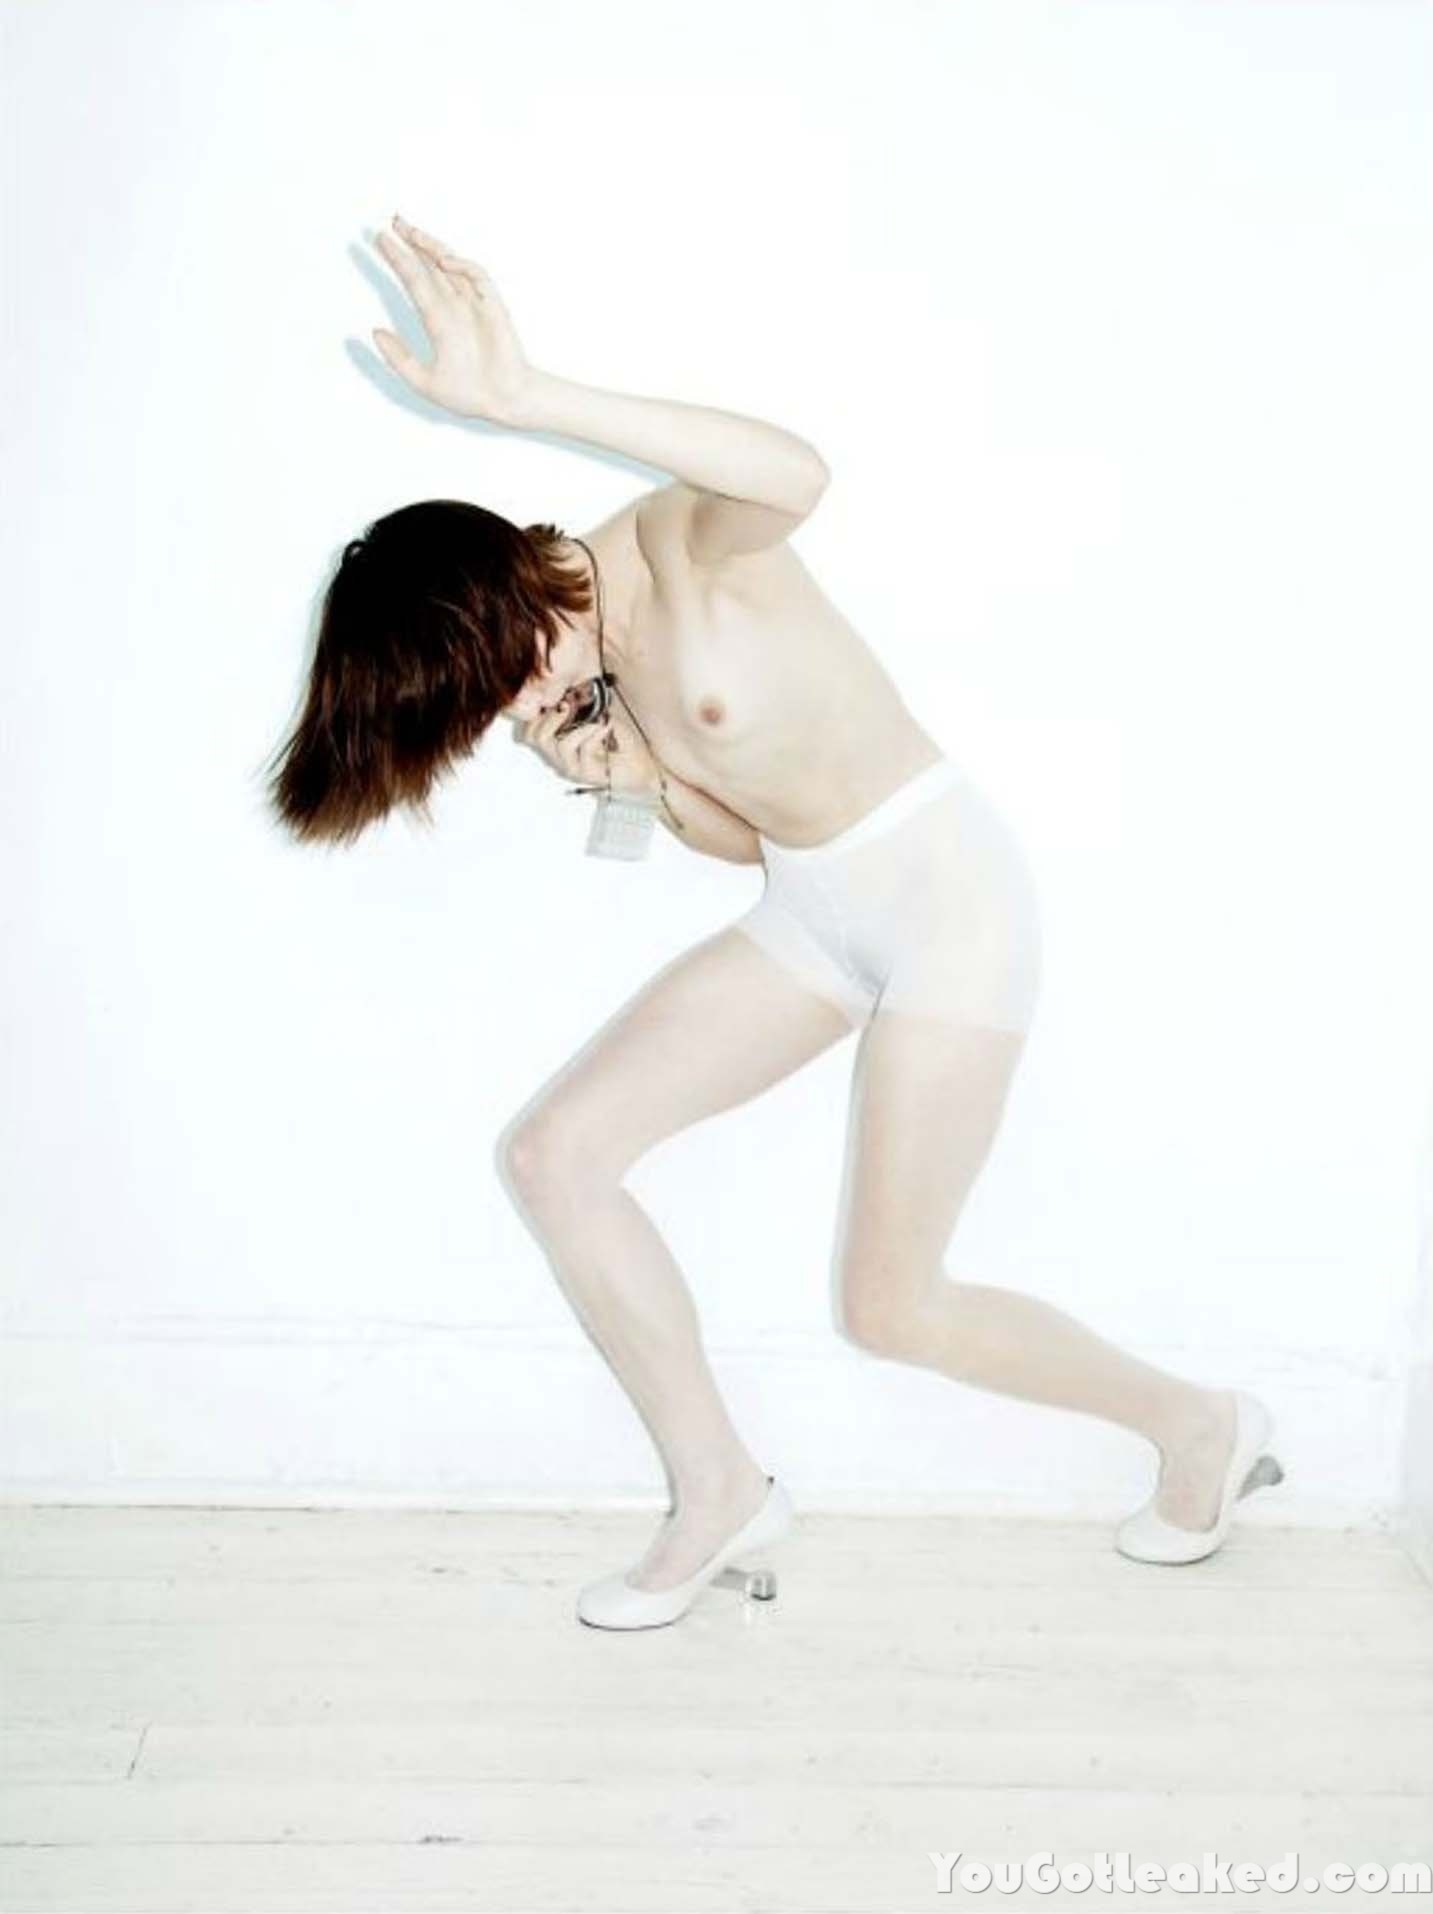 Nude photoset of Jena Malone #79543990